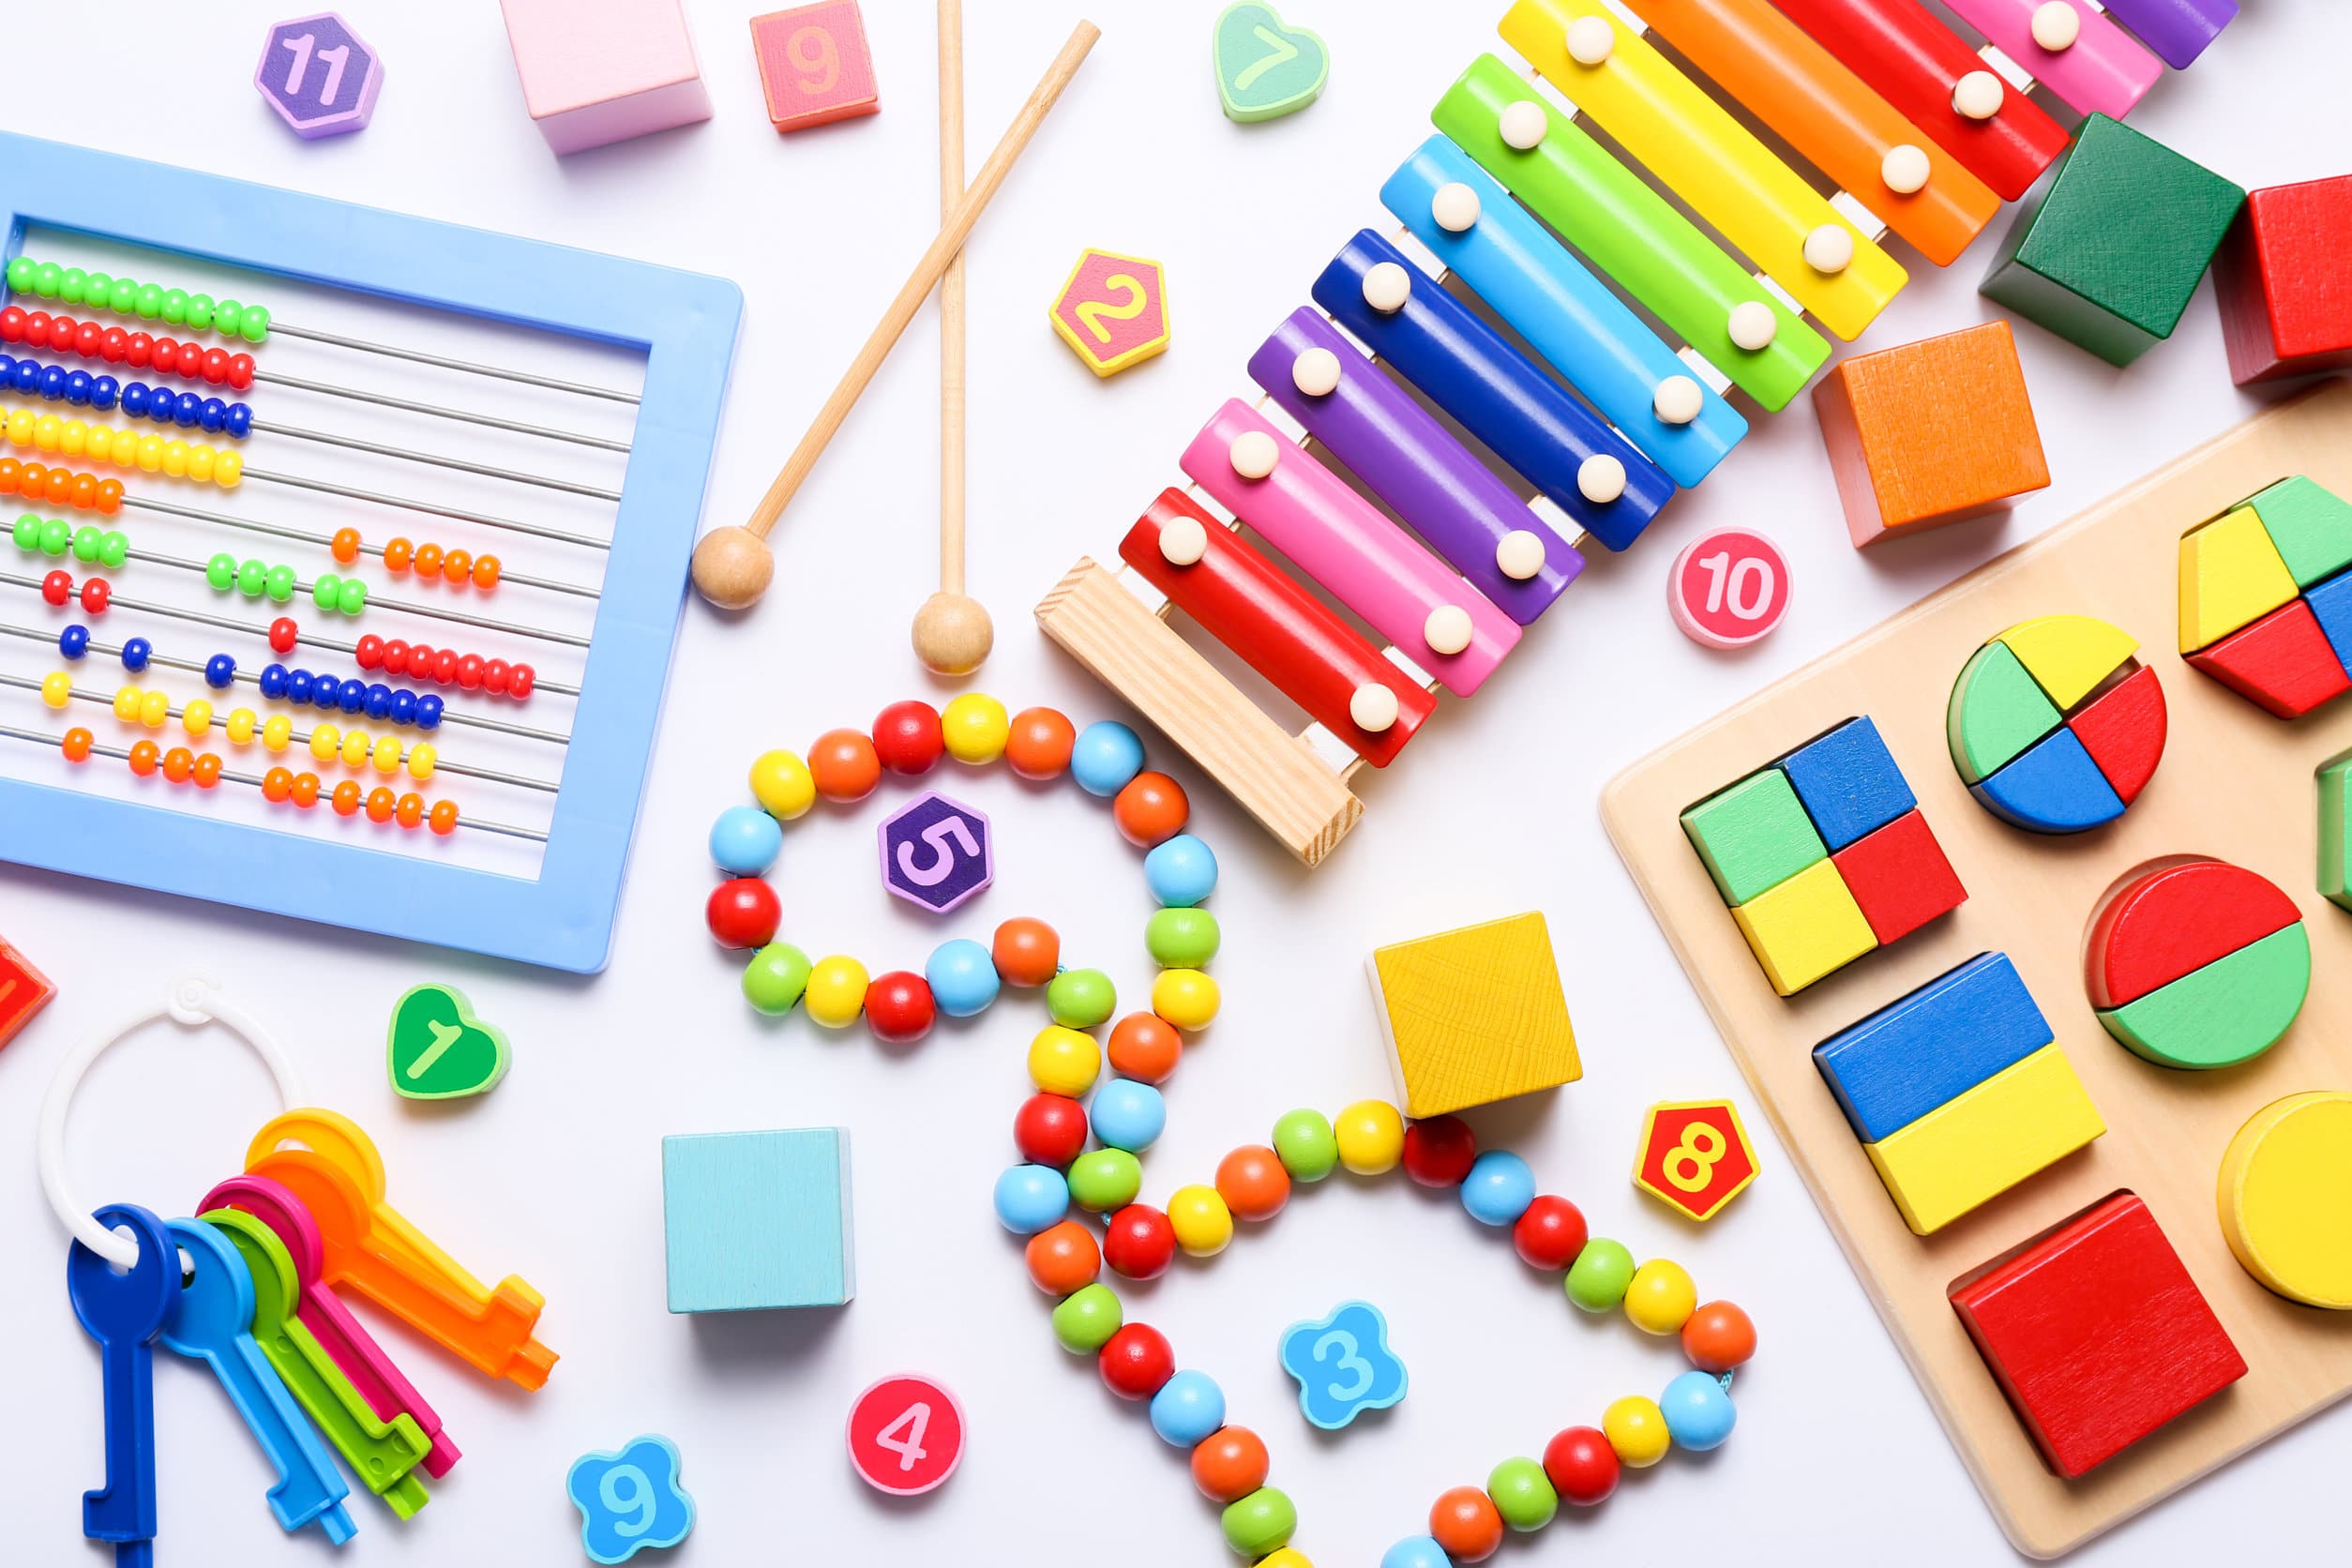 Decenas de coloridos juguetes educativos para niños vistos desde arriba